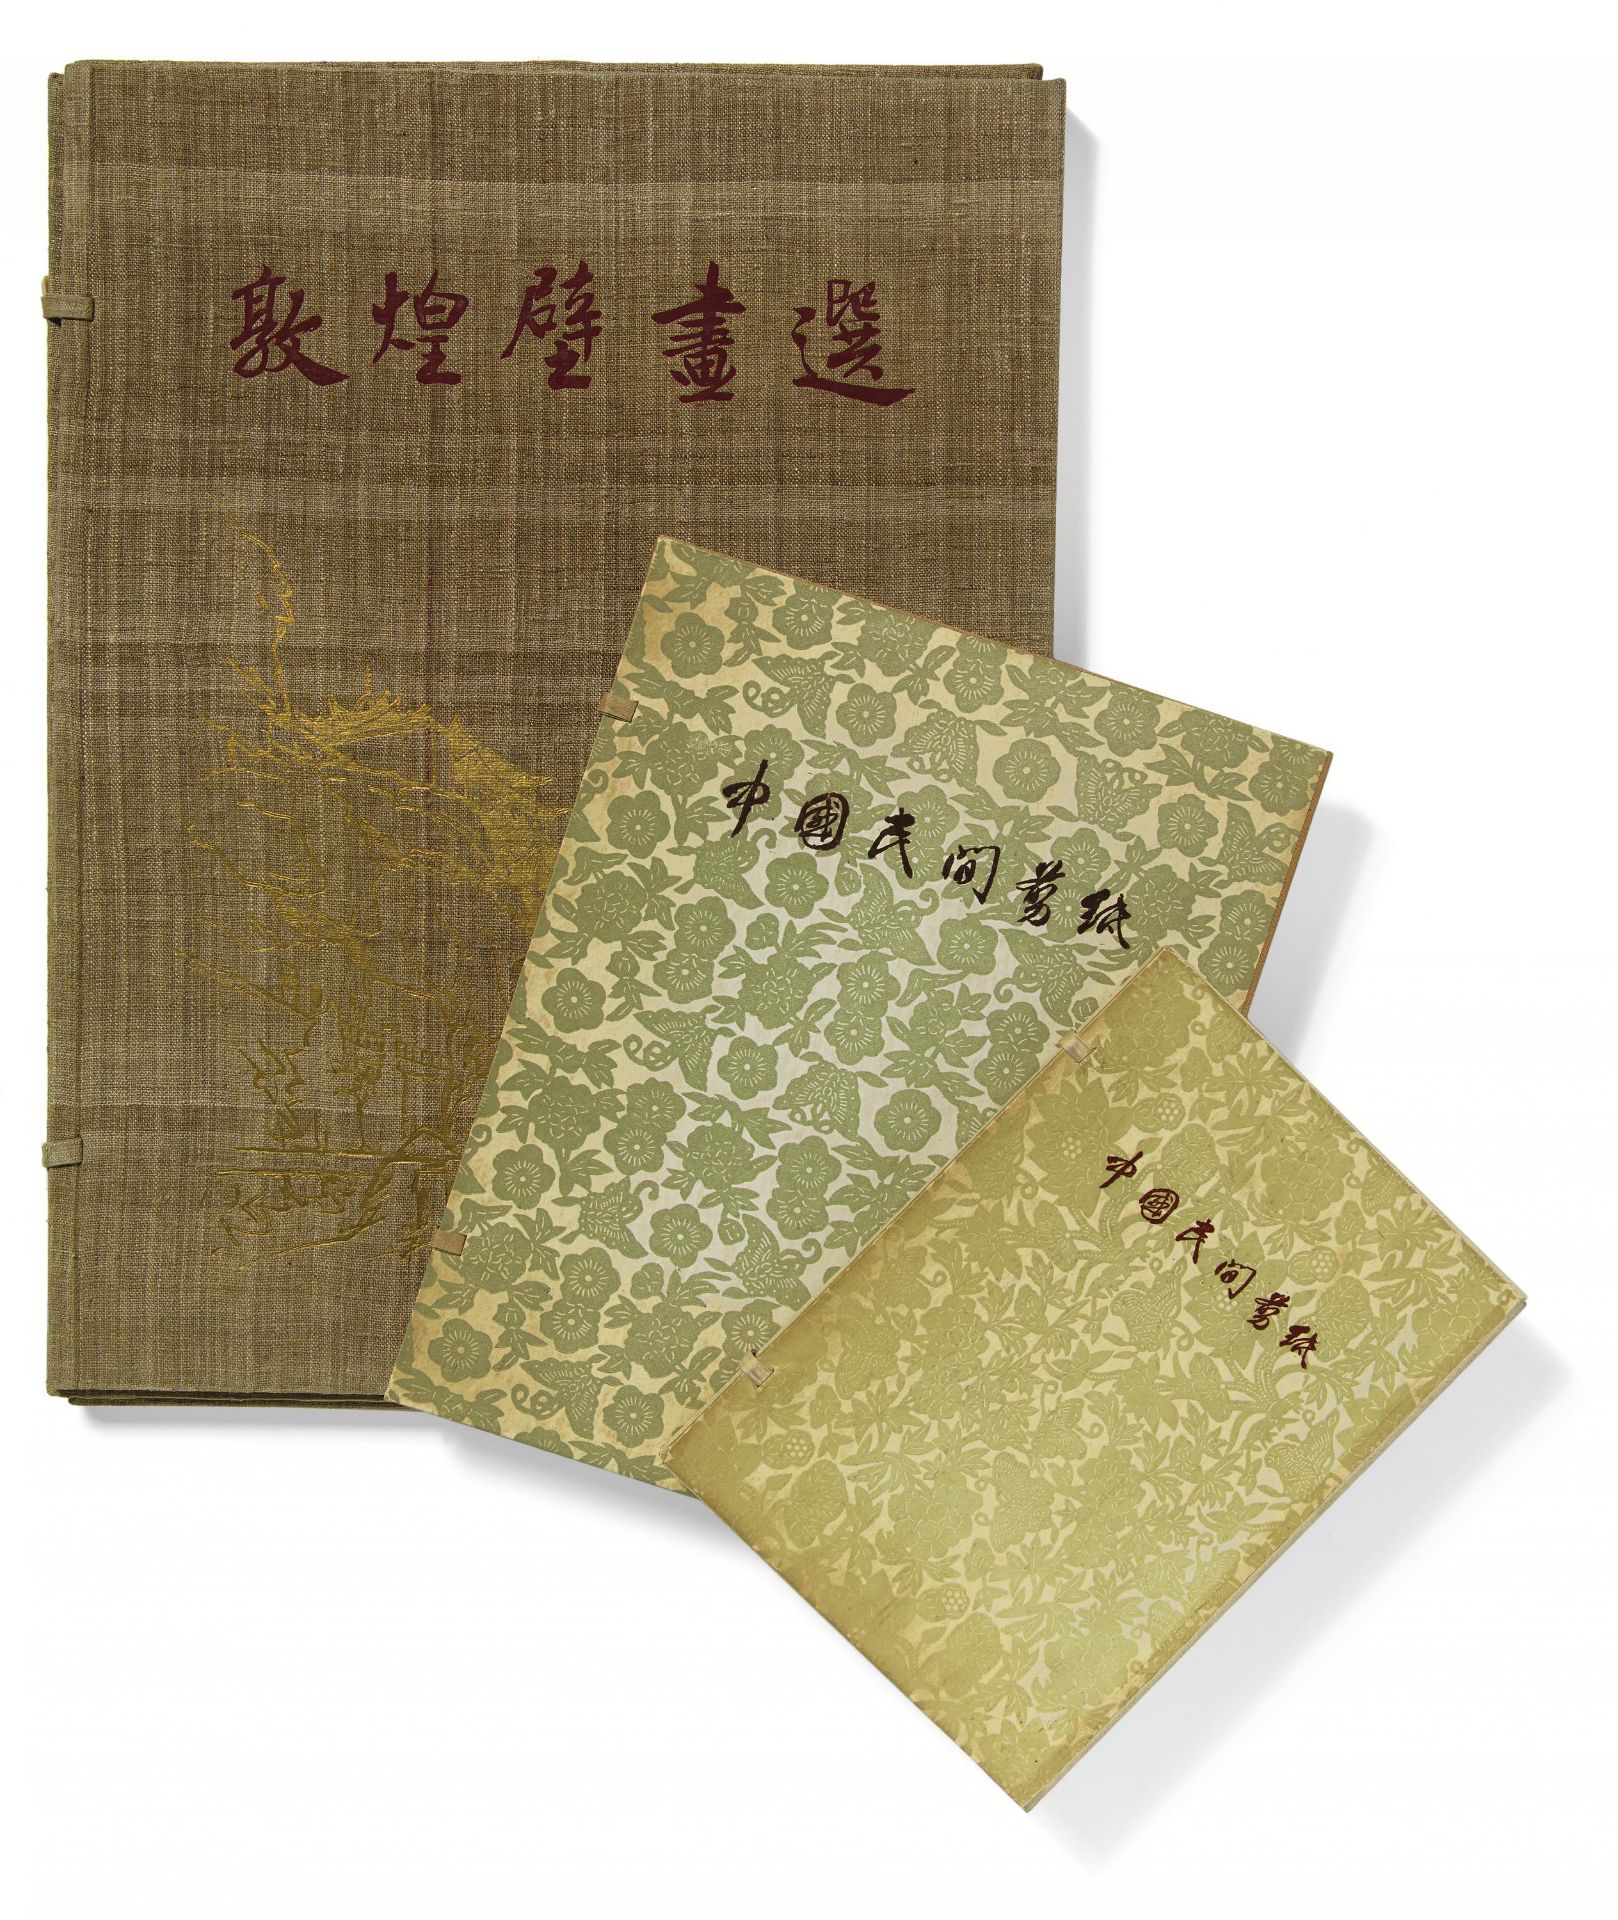 "DUNHUANG BIHUA XUAN". Origin: China. Maker/Designer: Rongbaozhai, Beijing. Publisher: Institute for